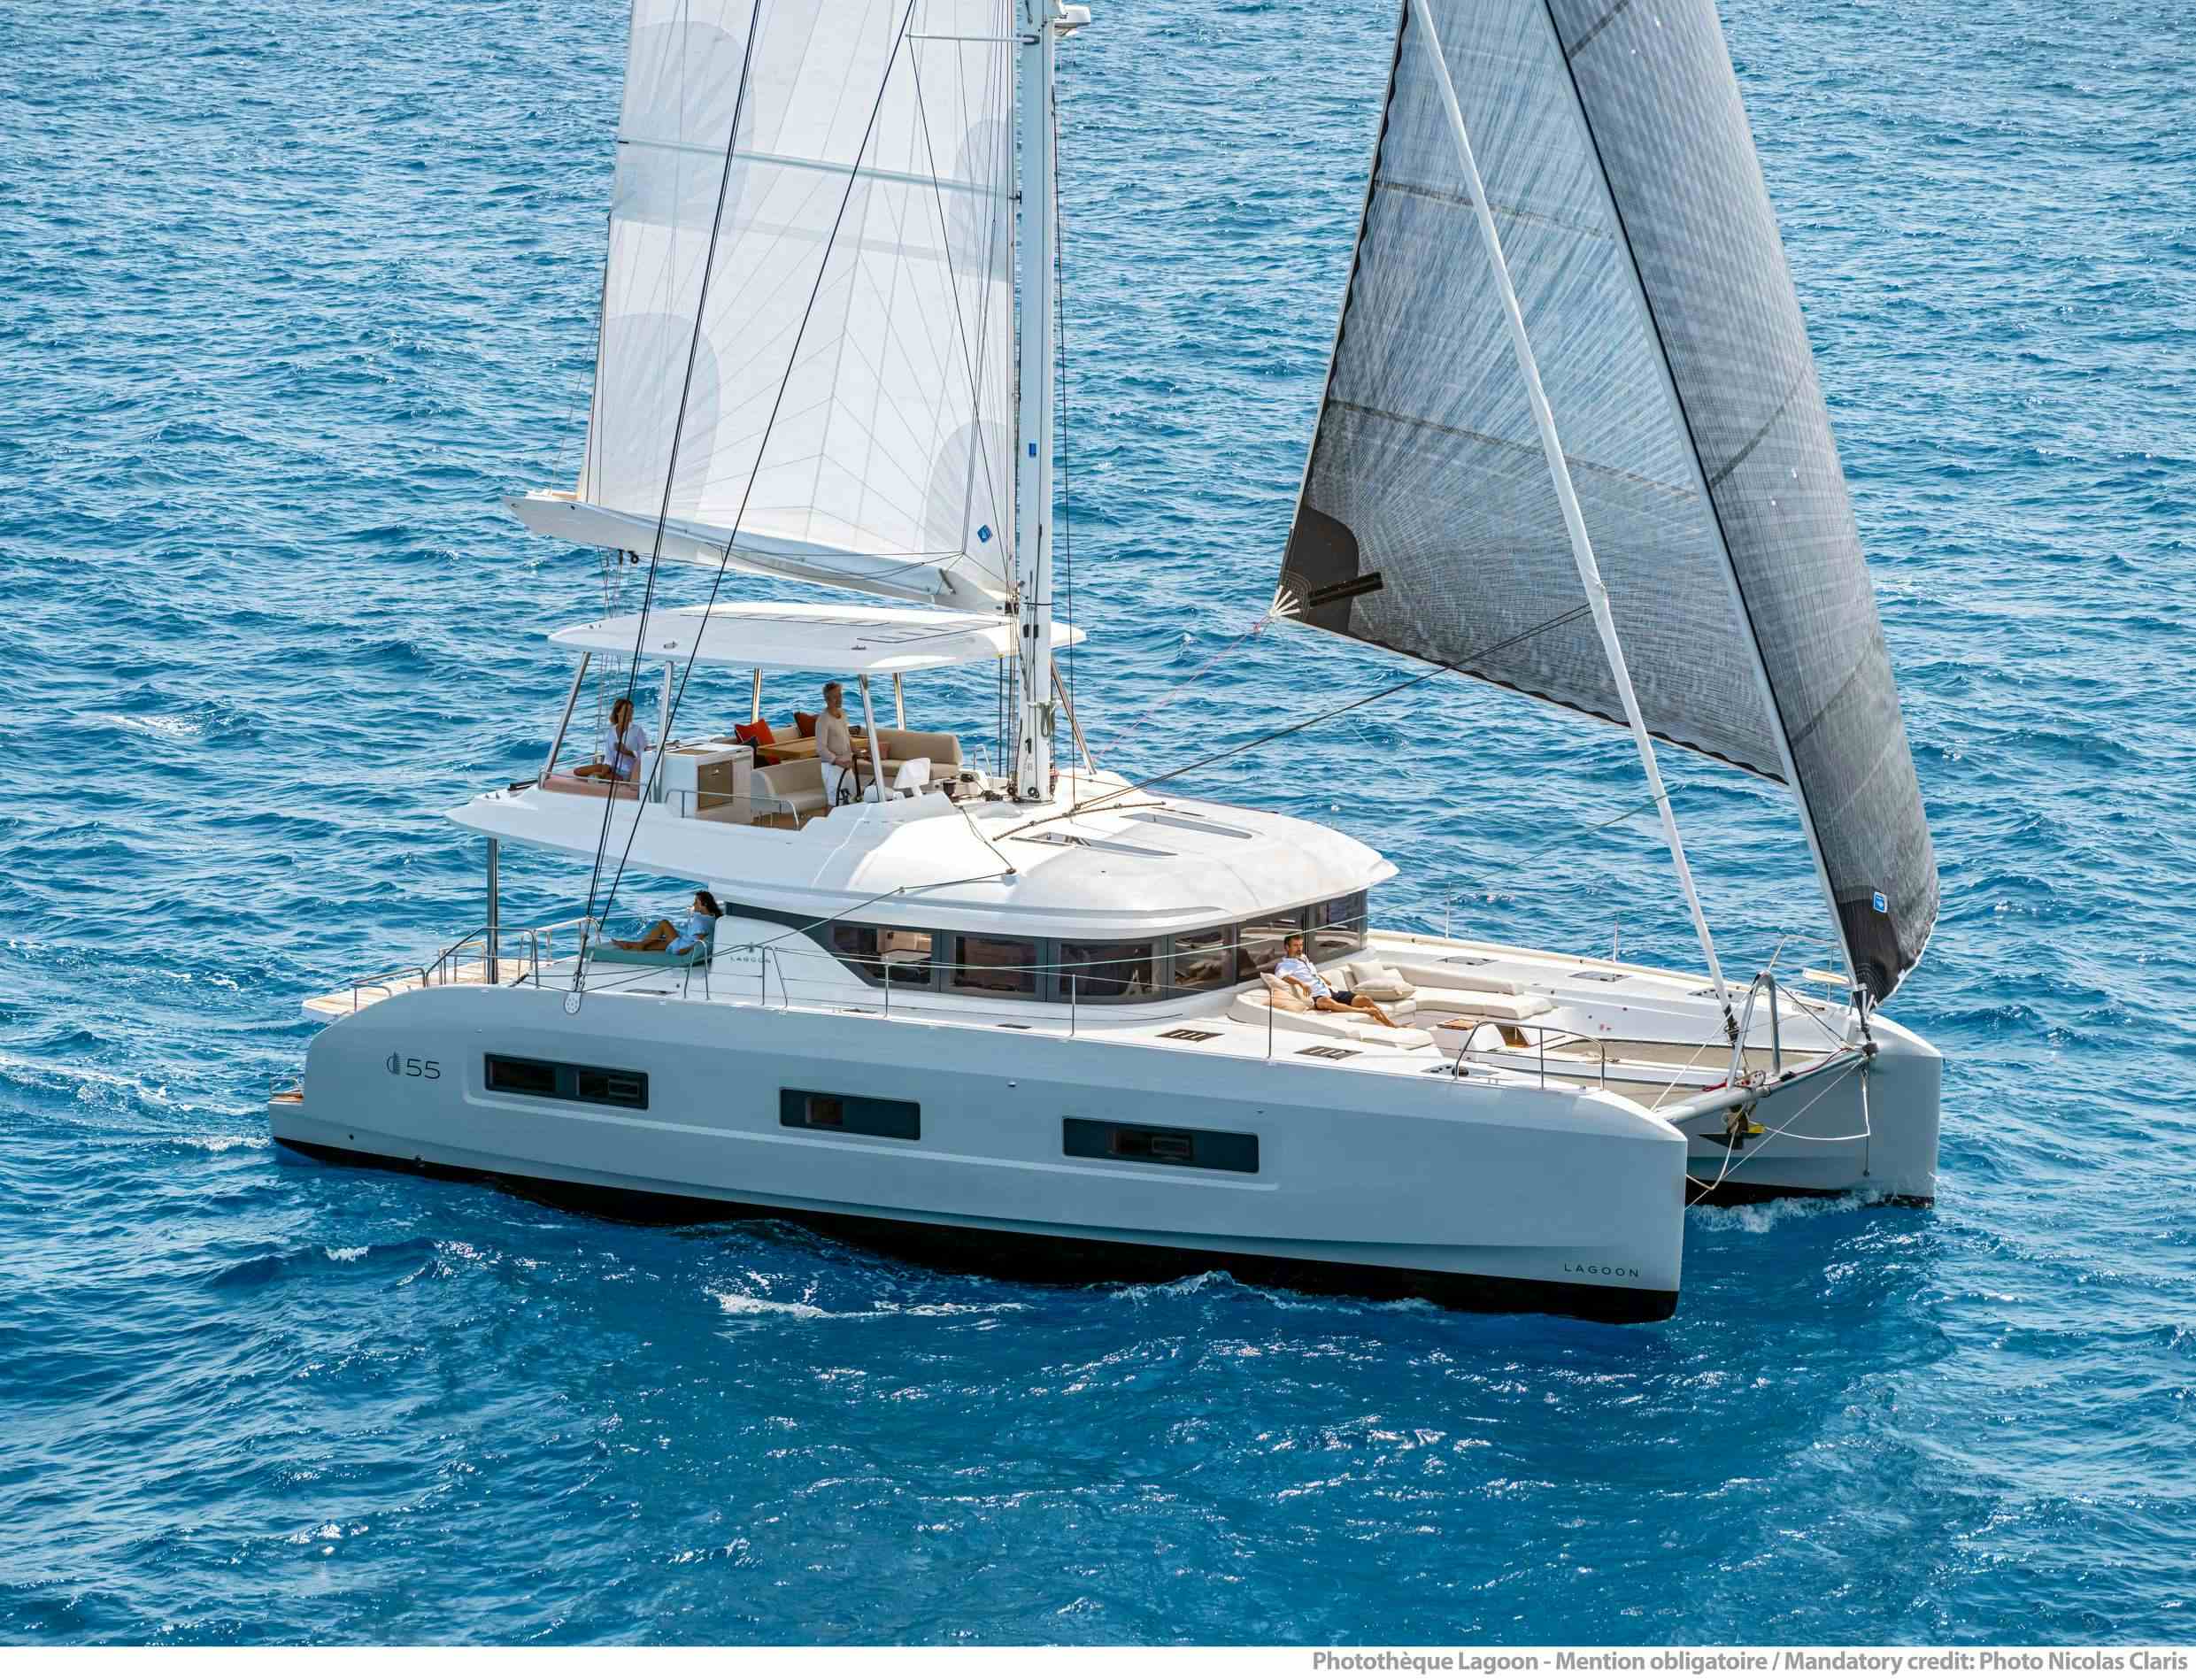 VALIUM 55 - Yacht Charter Marina di Montenero di Bisaccia & Boat hire in Greece 1